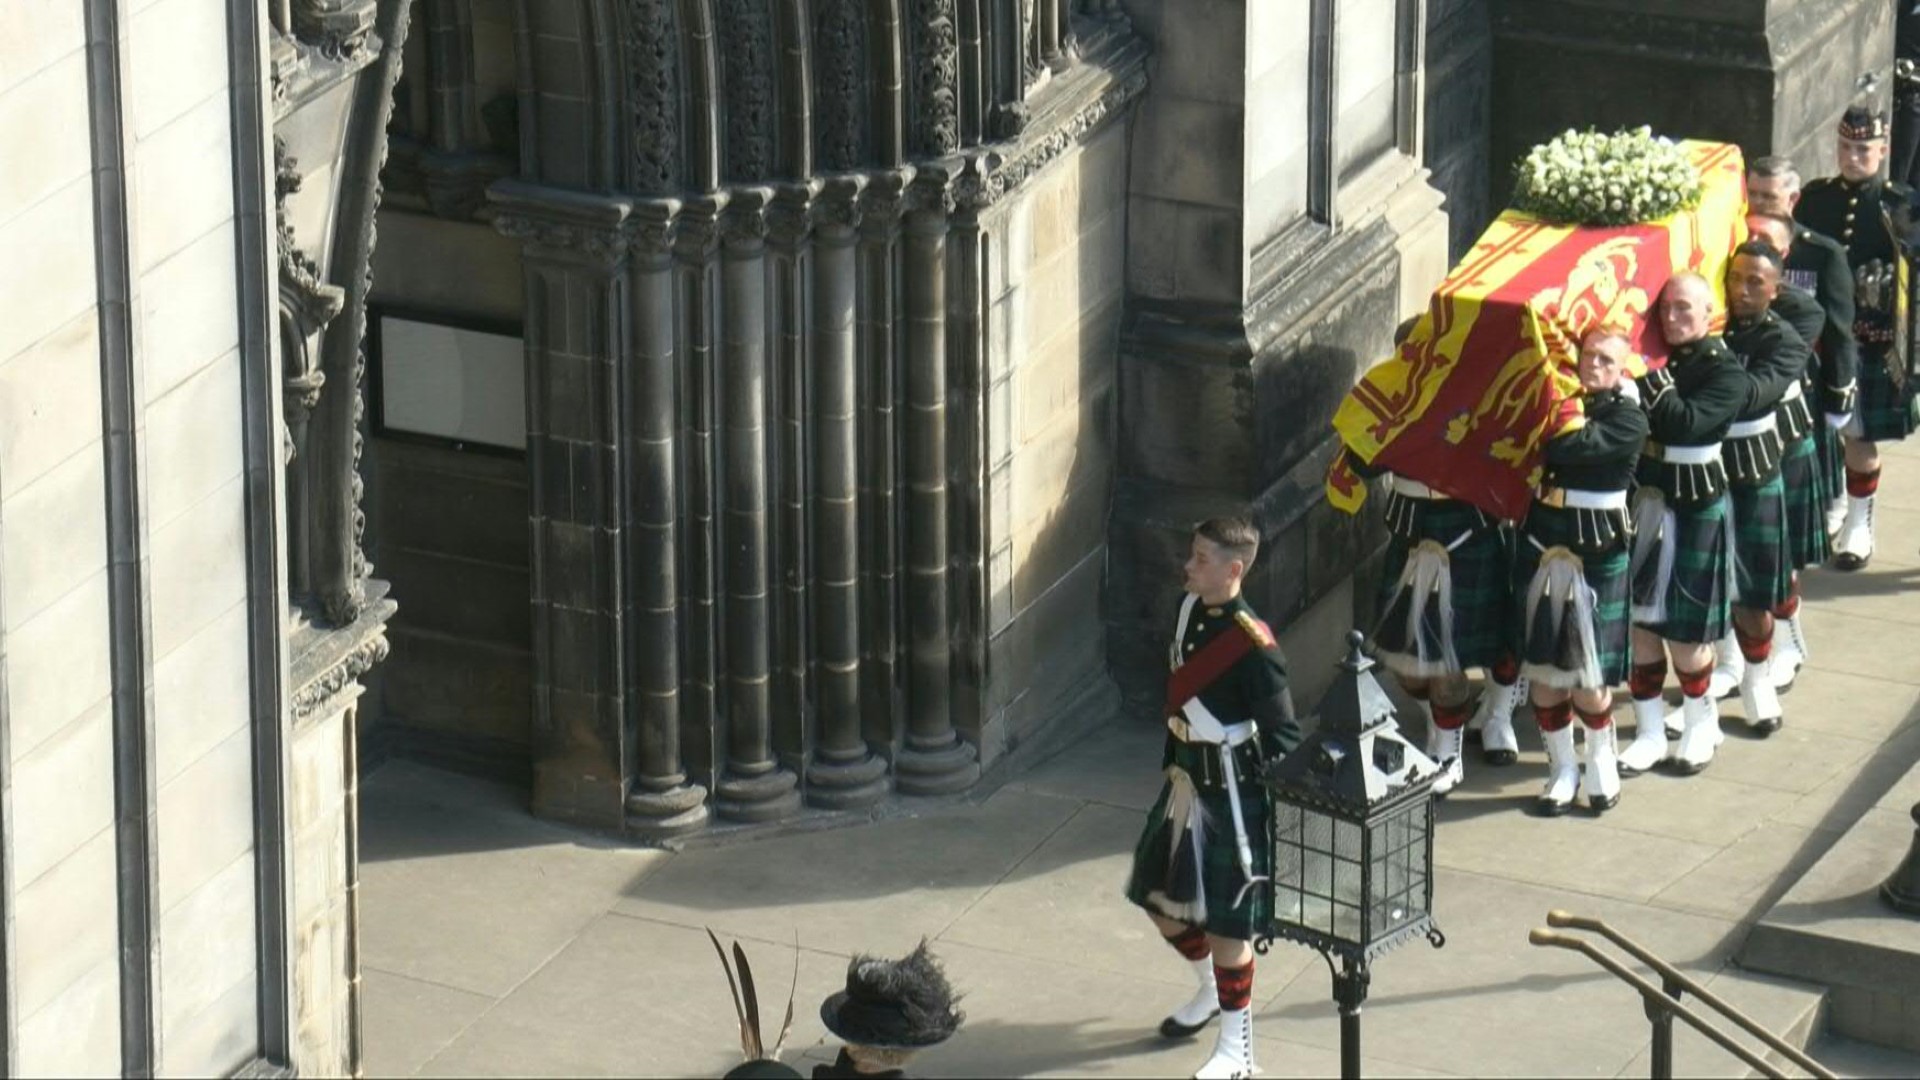 Queen Elizabeth II's farewell ceremonies begin in Scotland